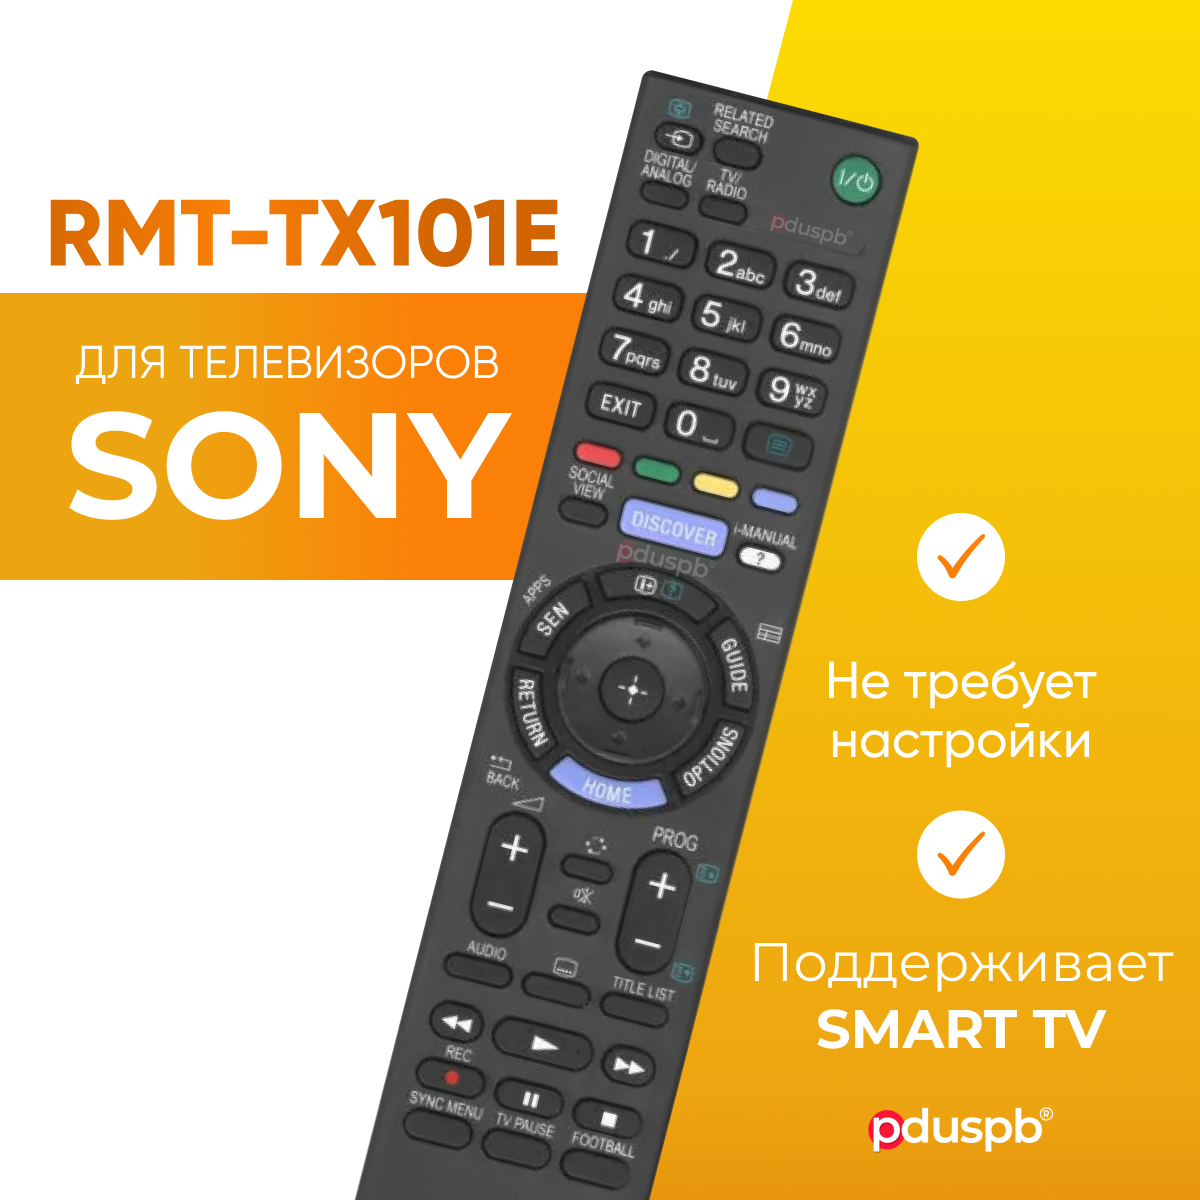 Пульт PDUSPB RMT-TX101E для телевизора Sony Smart TV